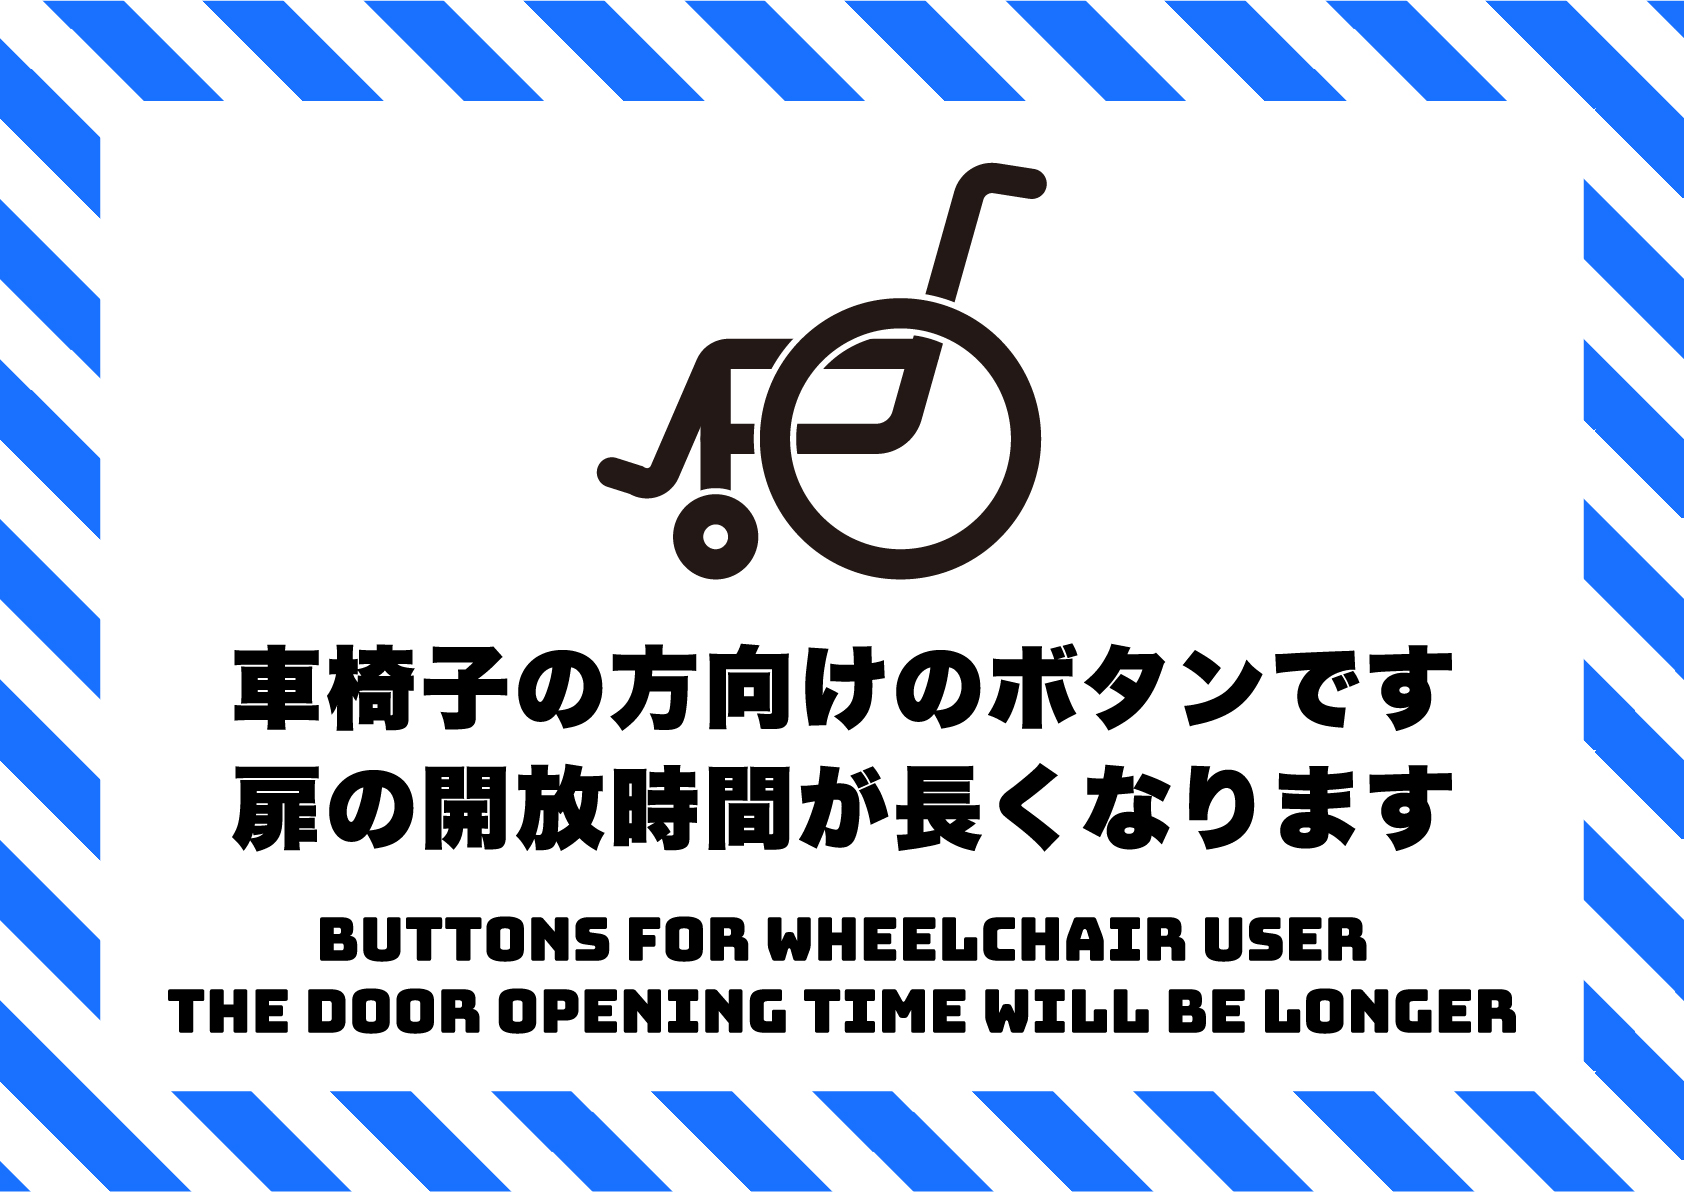 車椅子用のボタンです、開放時間が延長されますの張り紙